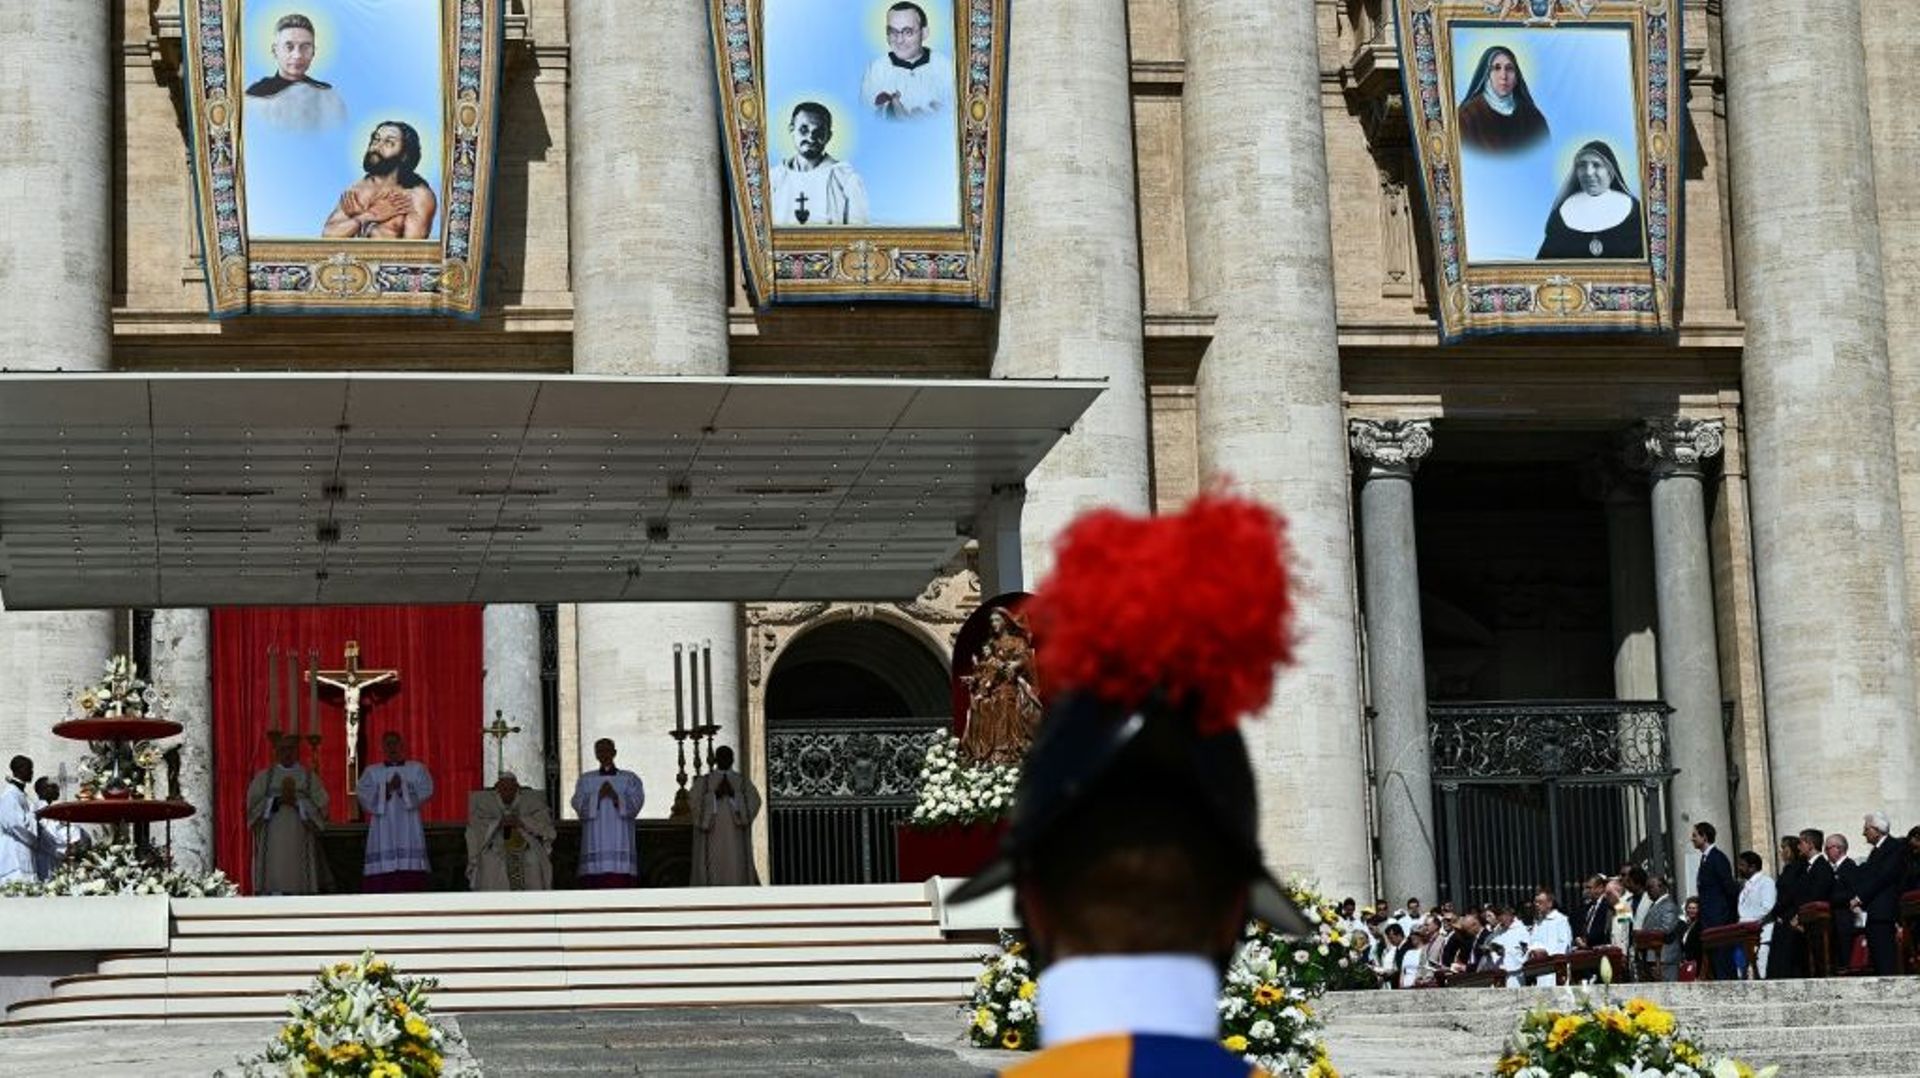 Le pape François préside la messe de canonisation de dix figures de l'Eglise, dont l'ermite du désert Charles de Foucauld, sur la place Saint-Pierre à Rome, le dimanche 15 mai 2022
